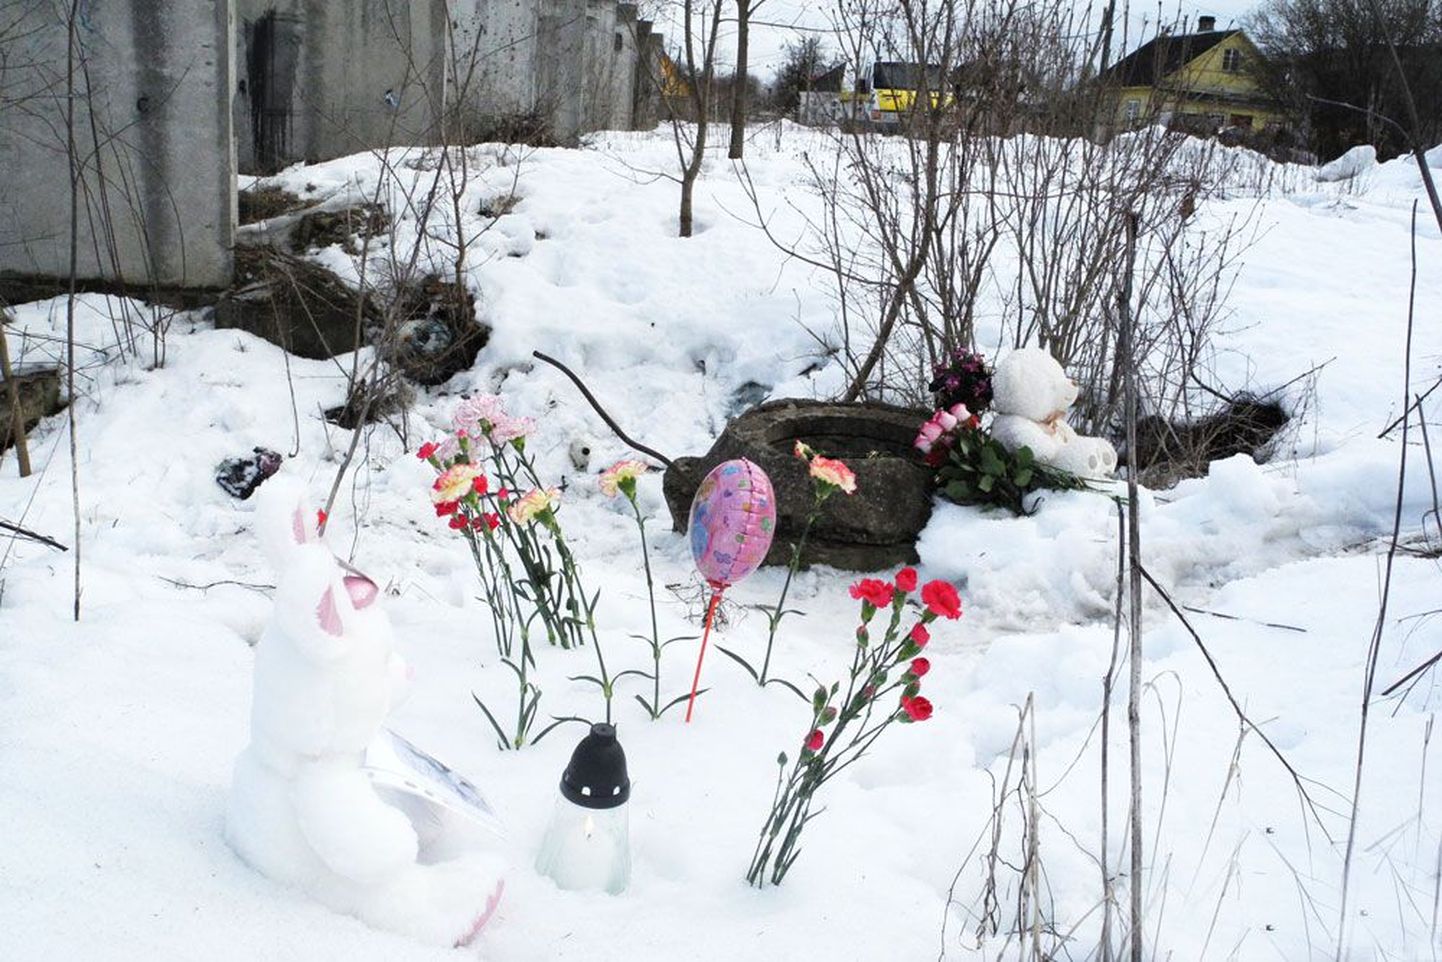 Varvara Ivanova leiti lumisest kraavist vana betoonkonstruktsiooni juurest, mõne meetri kaugusel Proletariaadi tänavast. Päris lähedal asuvatest eramajadest loodetakse leida pealtnägijaid. Eile tõid narvalased väikese tüdruku leidmiskohale lilli, küünlaid ja mänguasju.